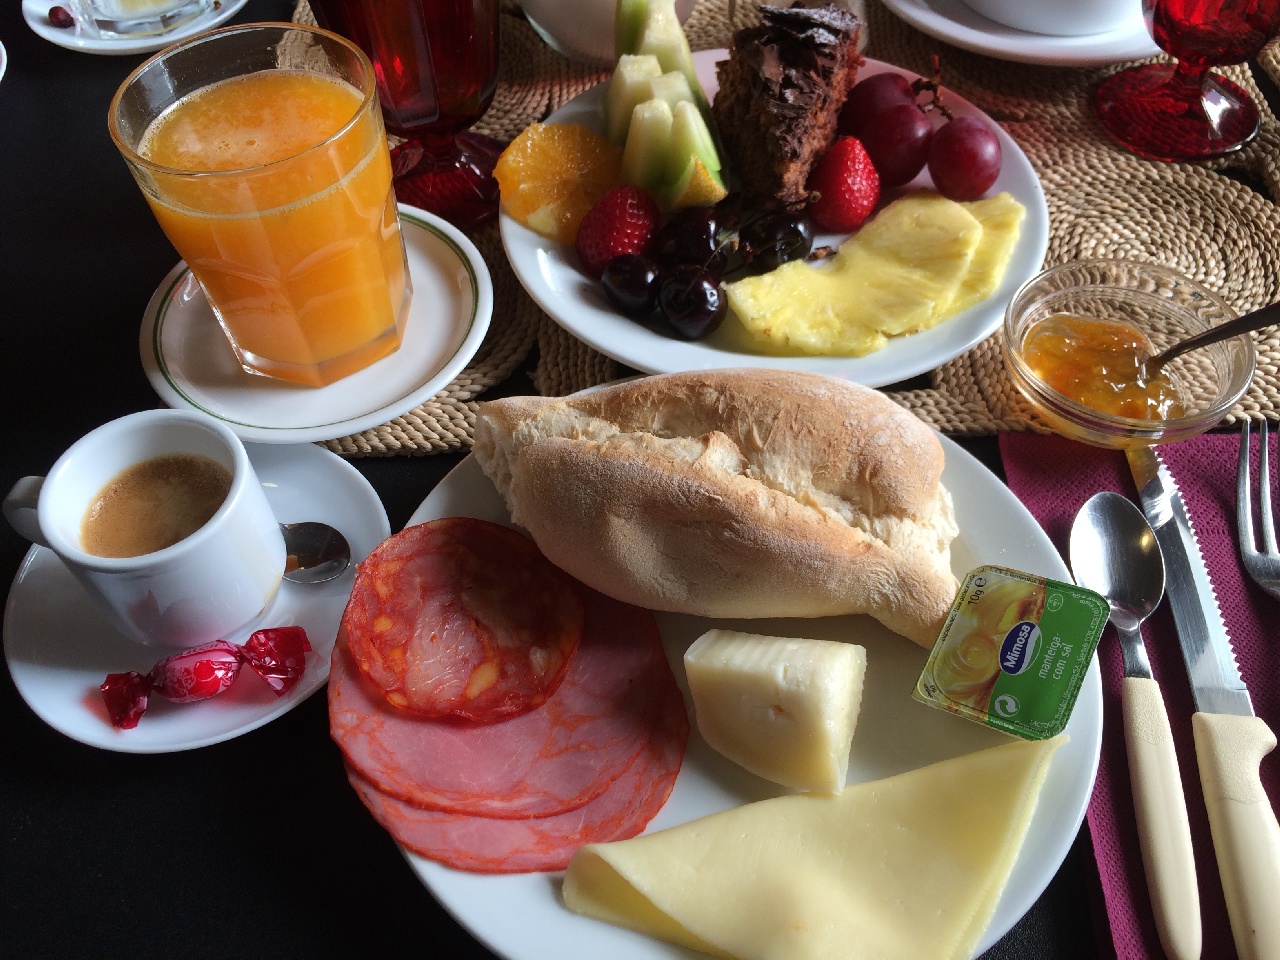 Breakfast "a la Residence Inn Lagos"